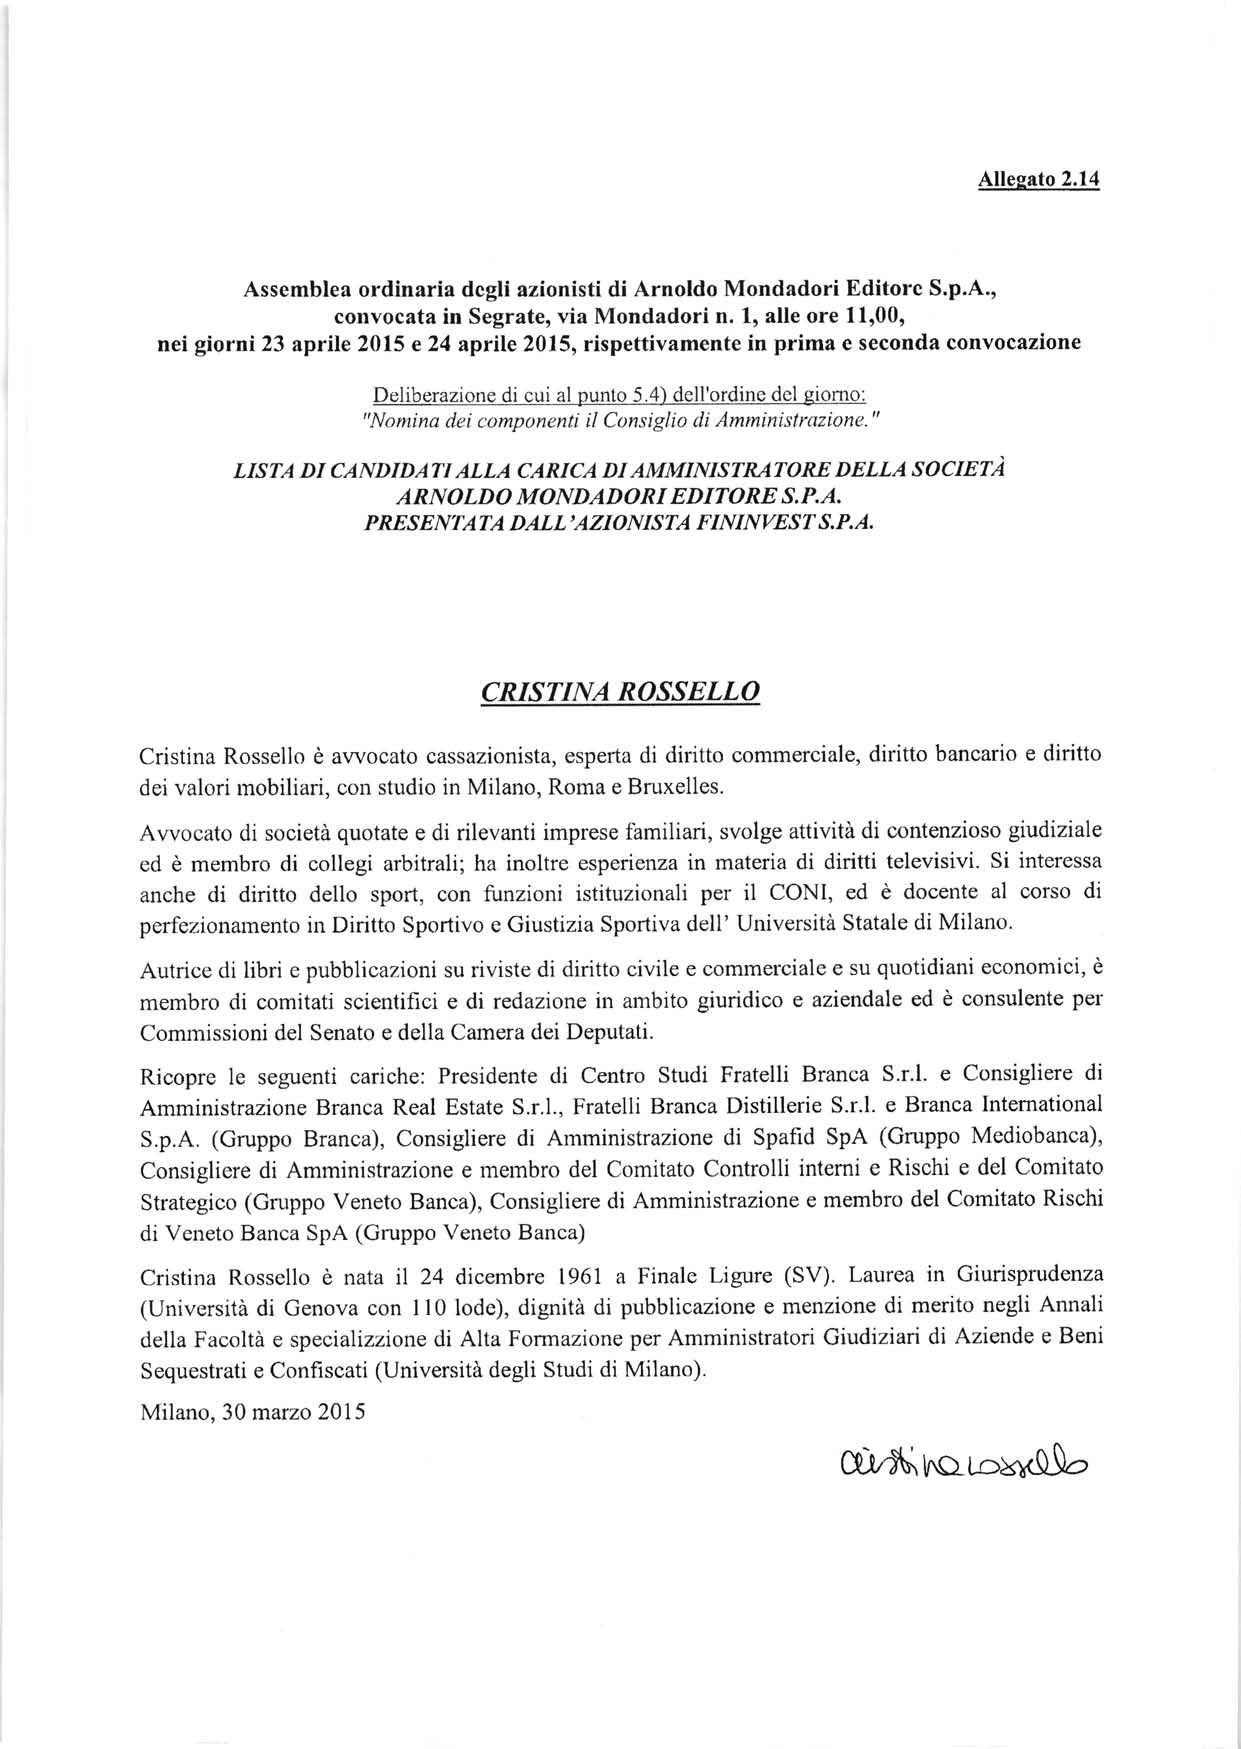 Assemblea ordinaria dcgli azionisti di Arnoldo Mondadori Editorc S.p.A., convocata in Segrate, via Mondadori n.